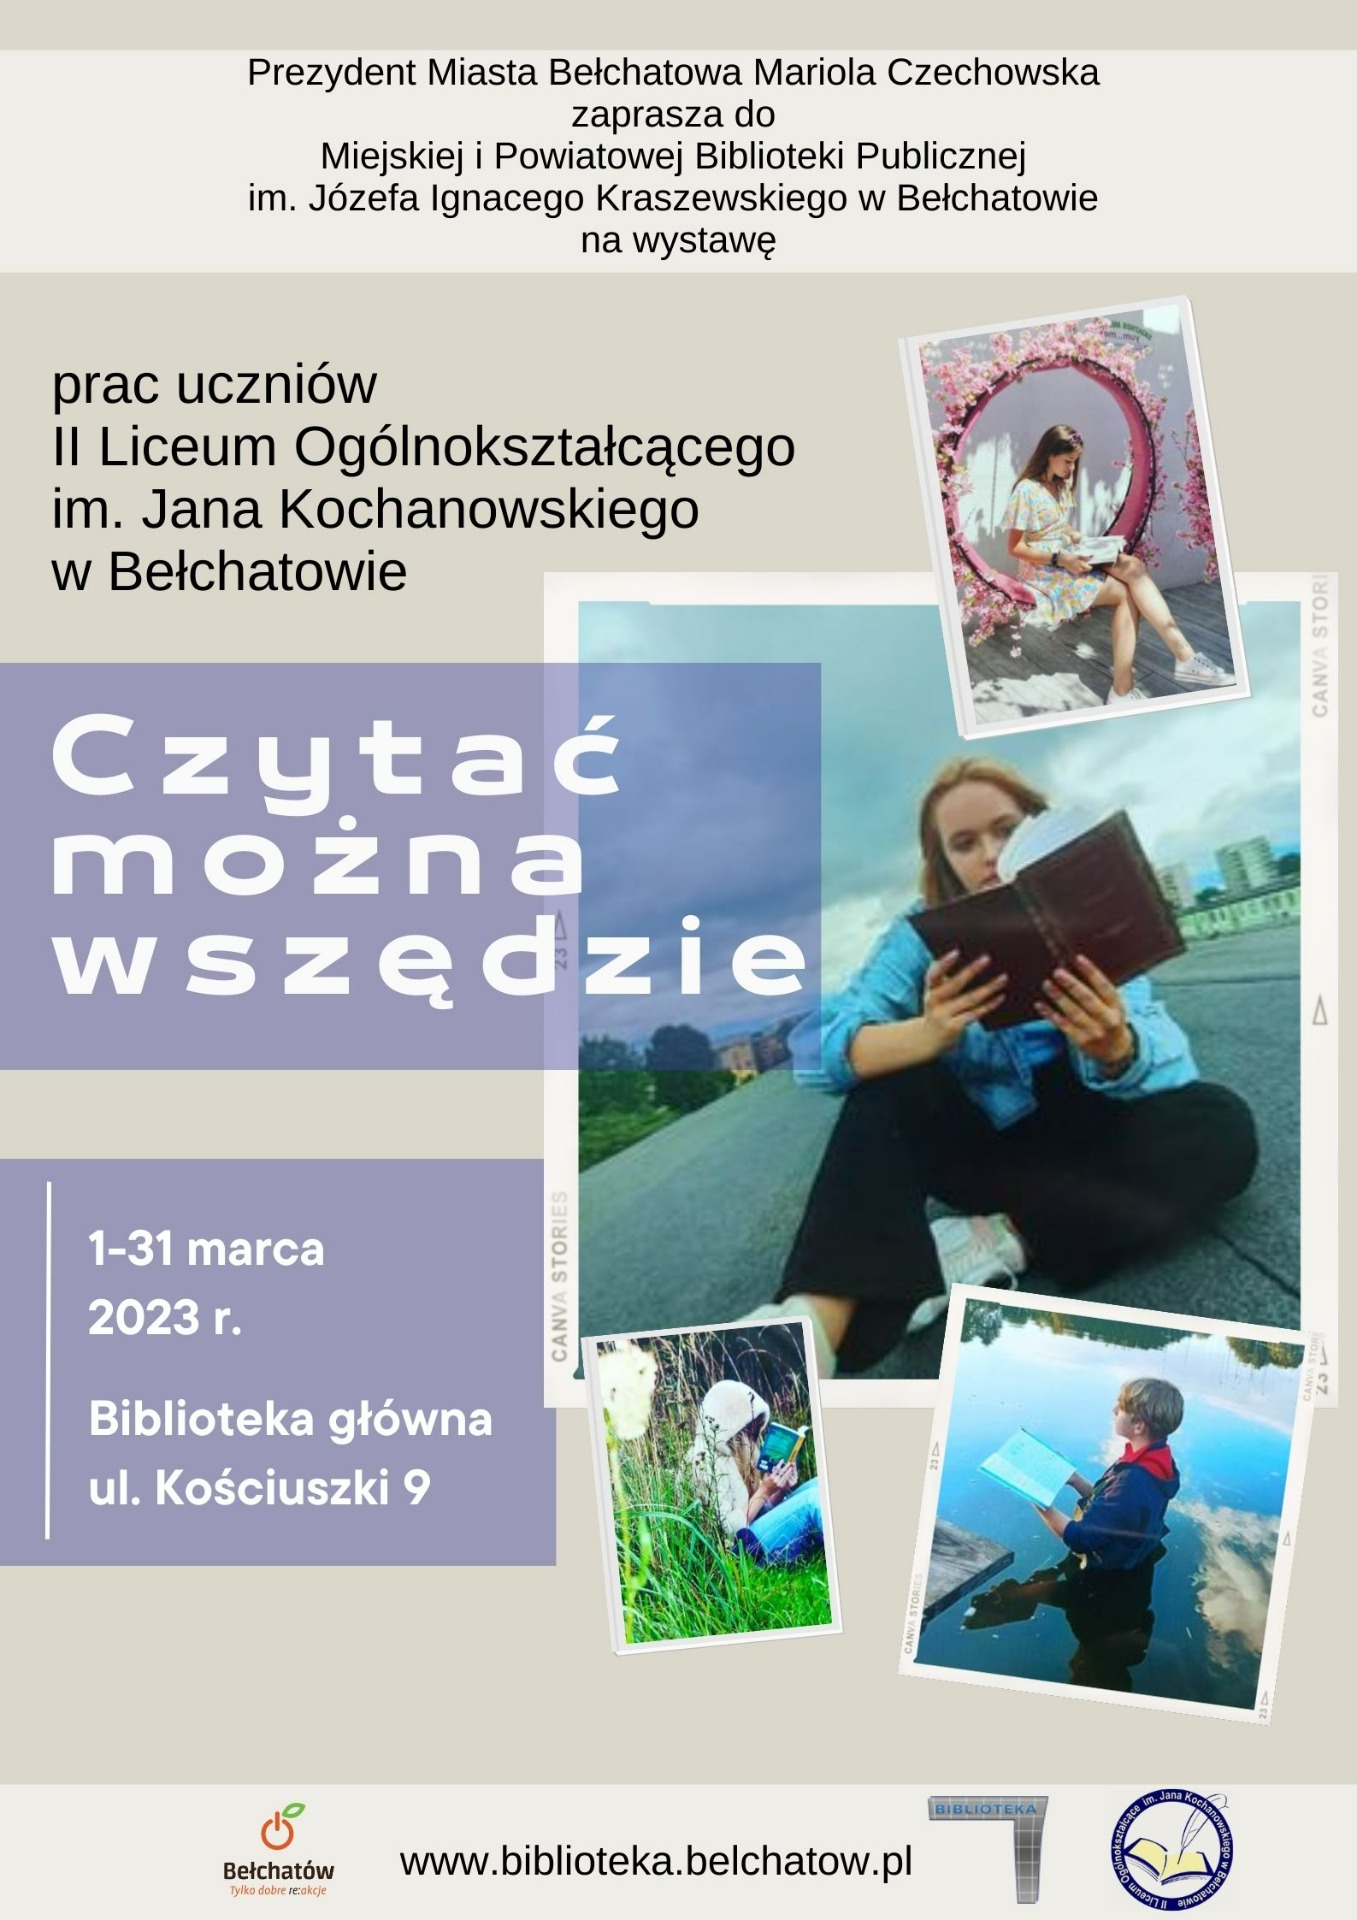 Plakat promujący wystawę prac uczniów "Czytać można wszędzie" w dniach 1-31 marca 2023 r. w MiPBP w Bełchatowie